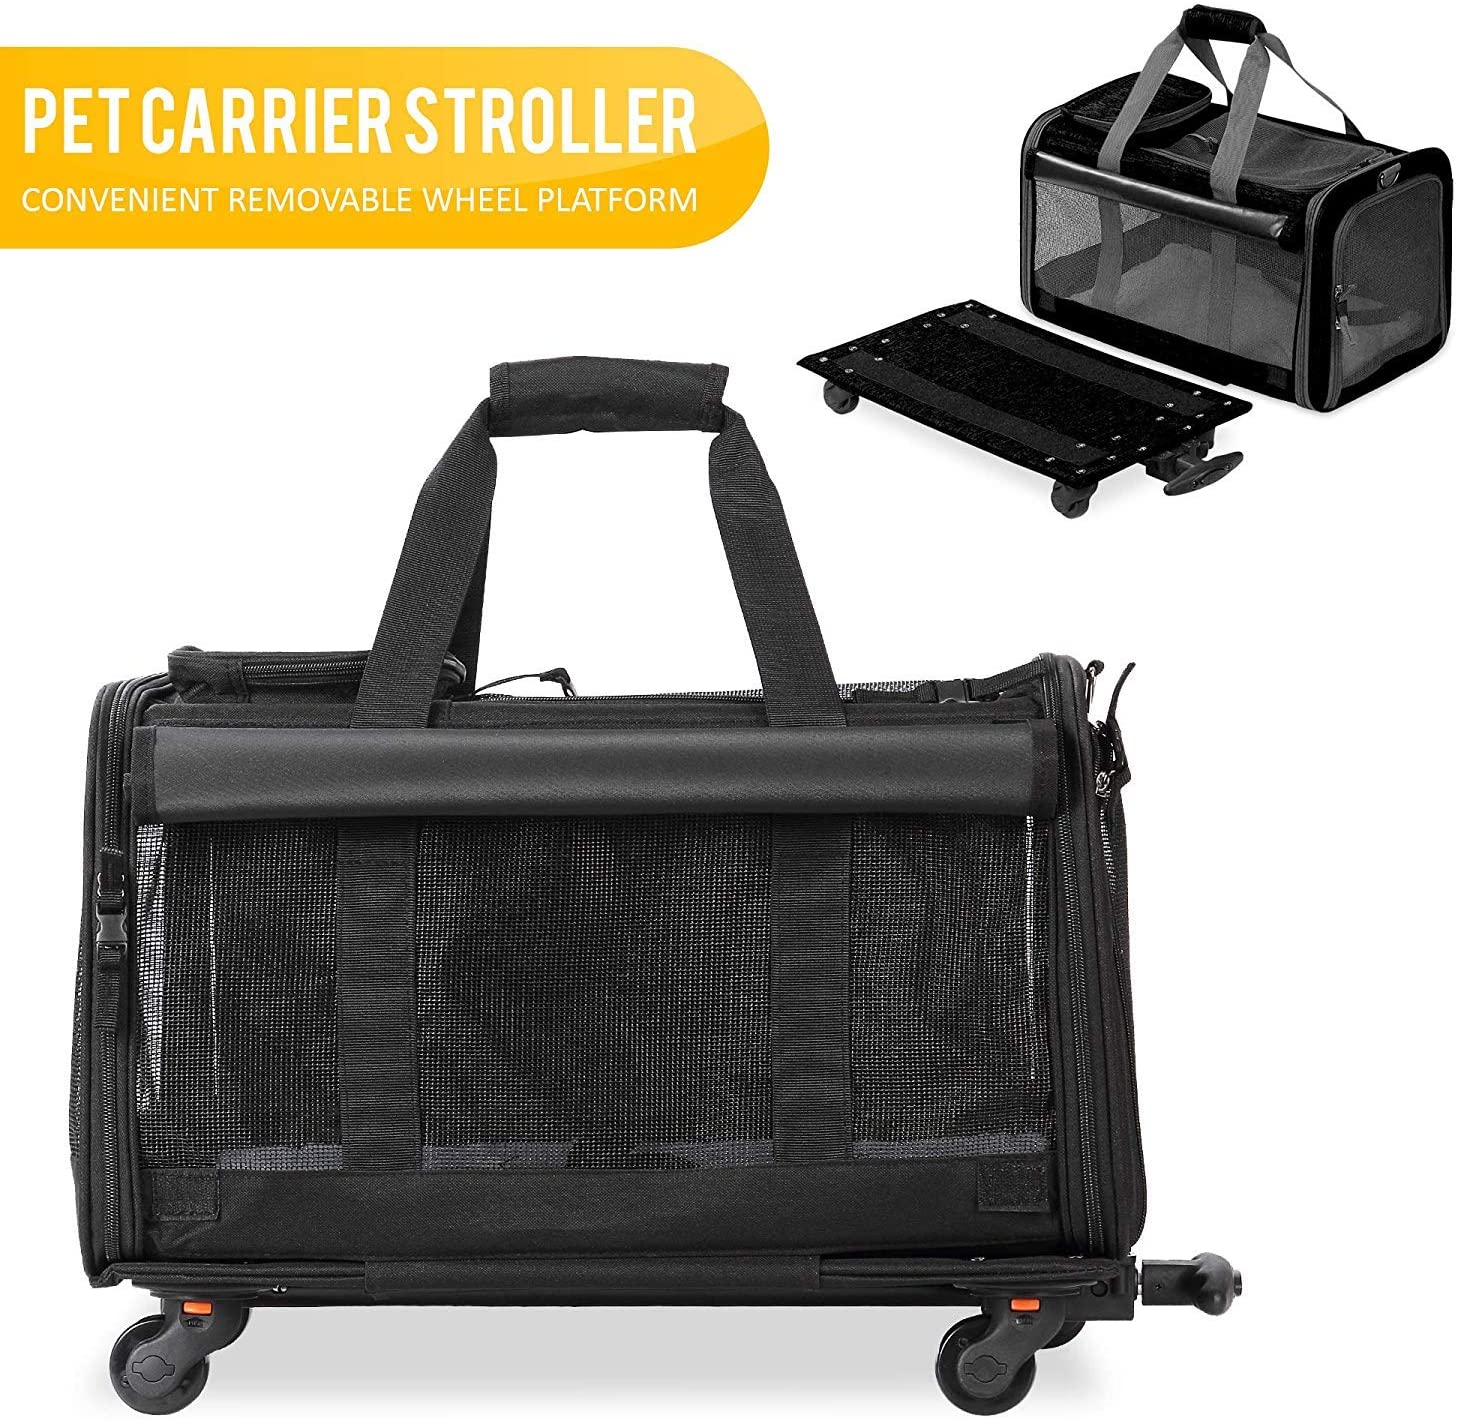  KOPEKS Transportador de Viaje para Mascotas, Bolsa con Manecilla y 4 Ruedas para Transportar Perros, Gatos, Mascotas y Accesorios - Negro 